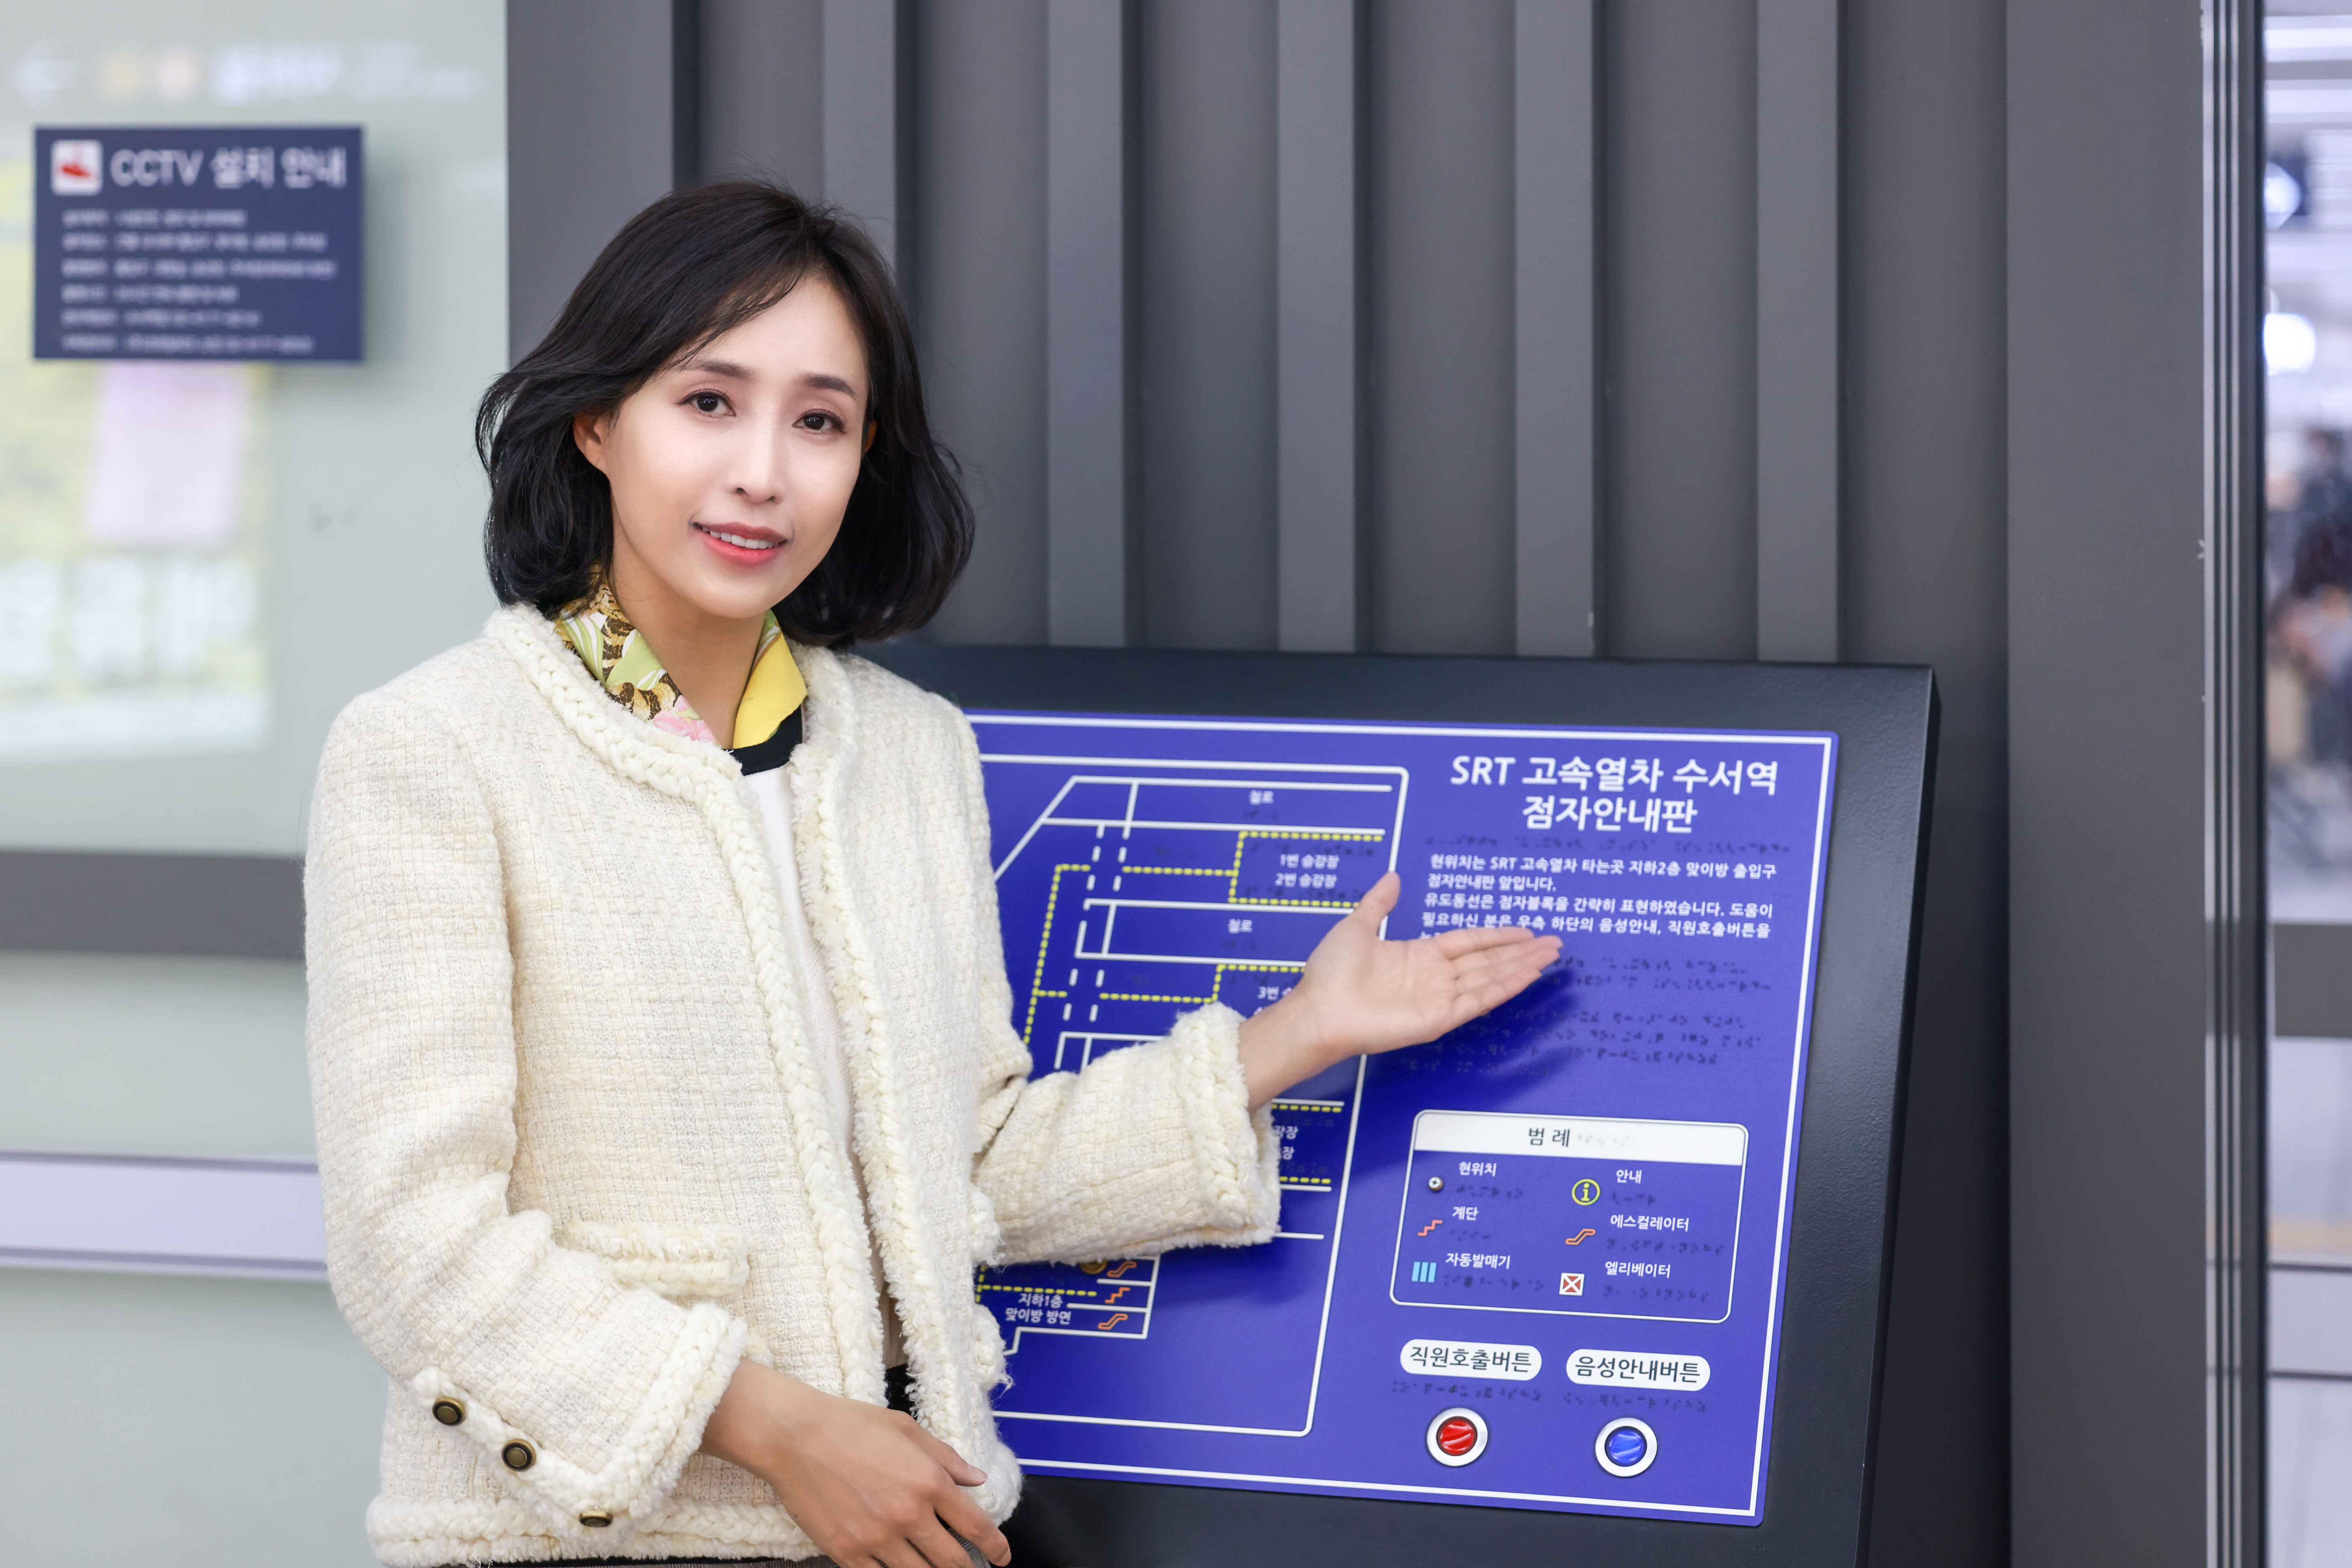 박은주 국토교통부 국어책임관이 수서역의 ‘점자 안내판’을 가리키고 있다. 국토교통부 제공